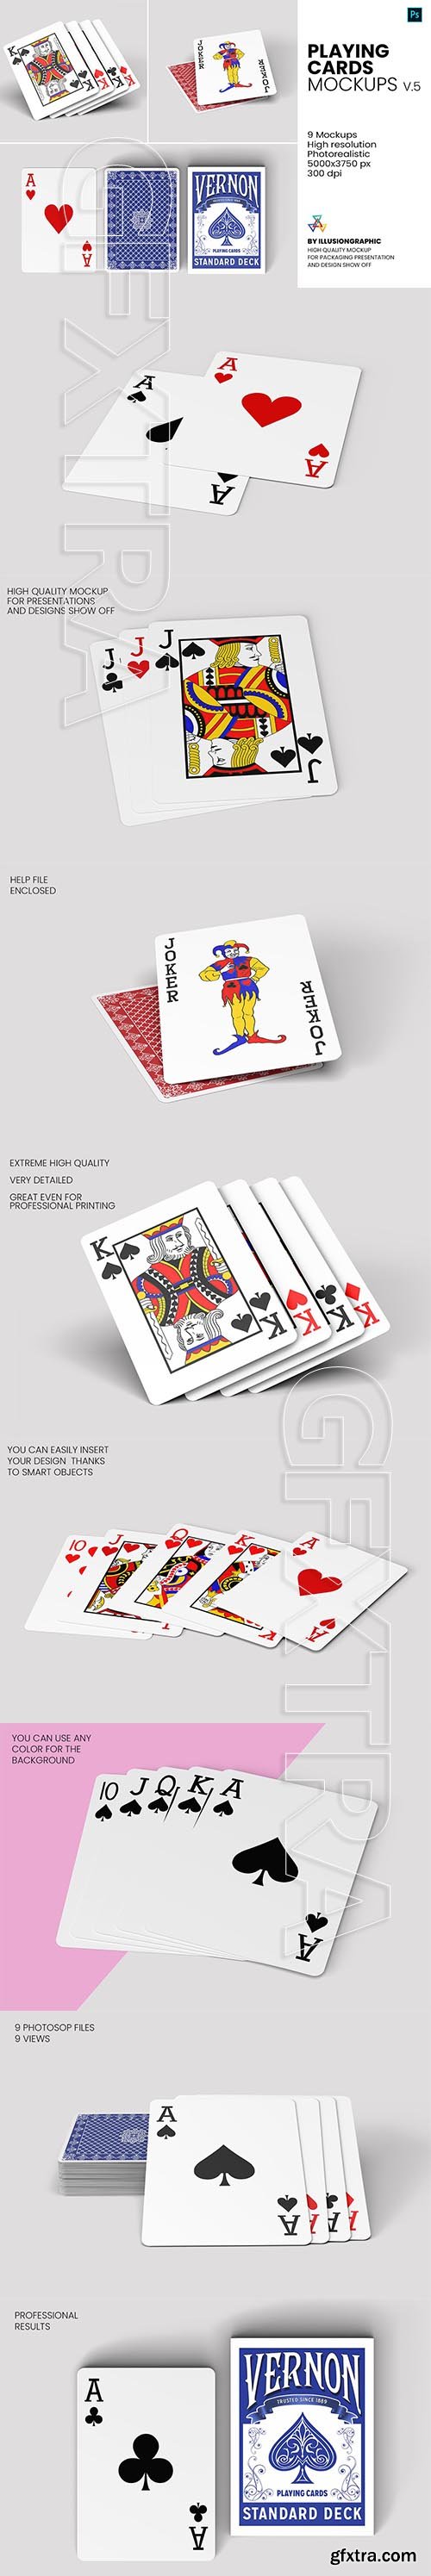 CreativeMarket - Playing Cards Mockups - v.5 5793117